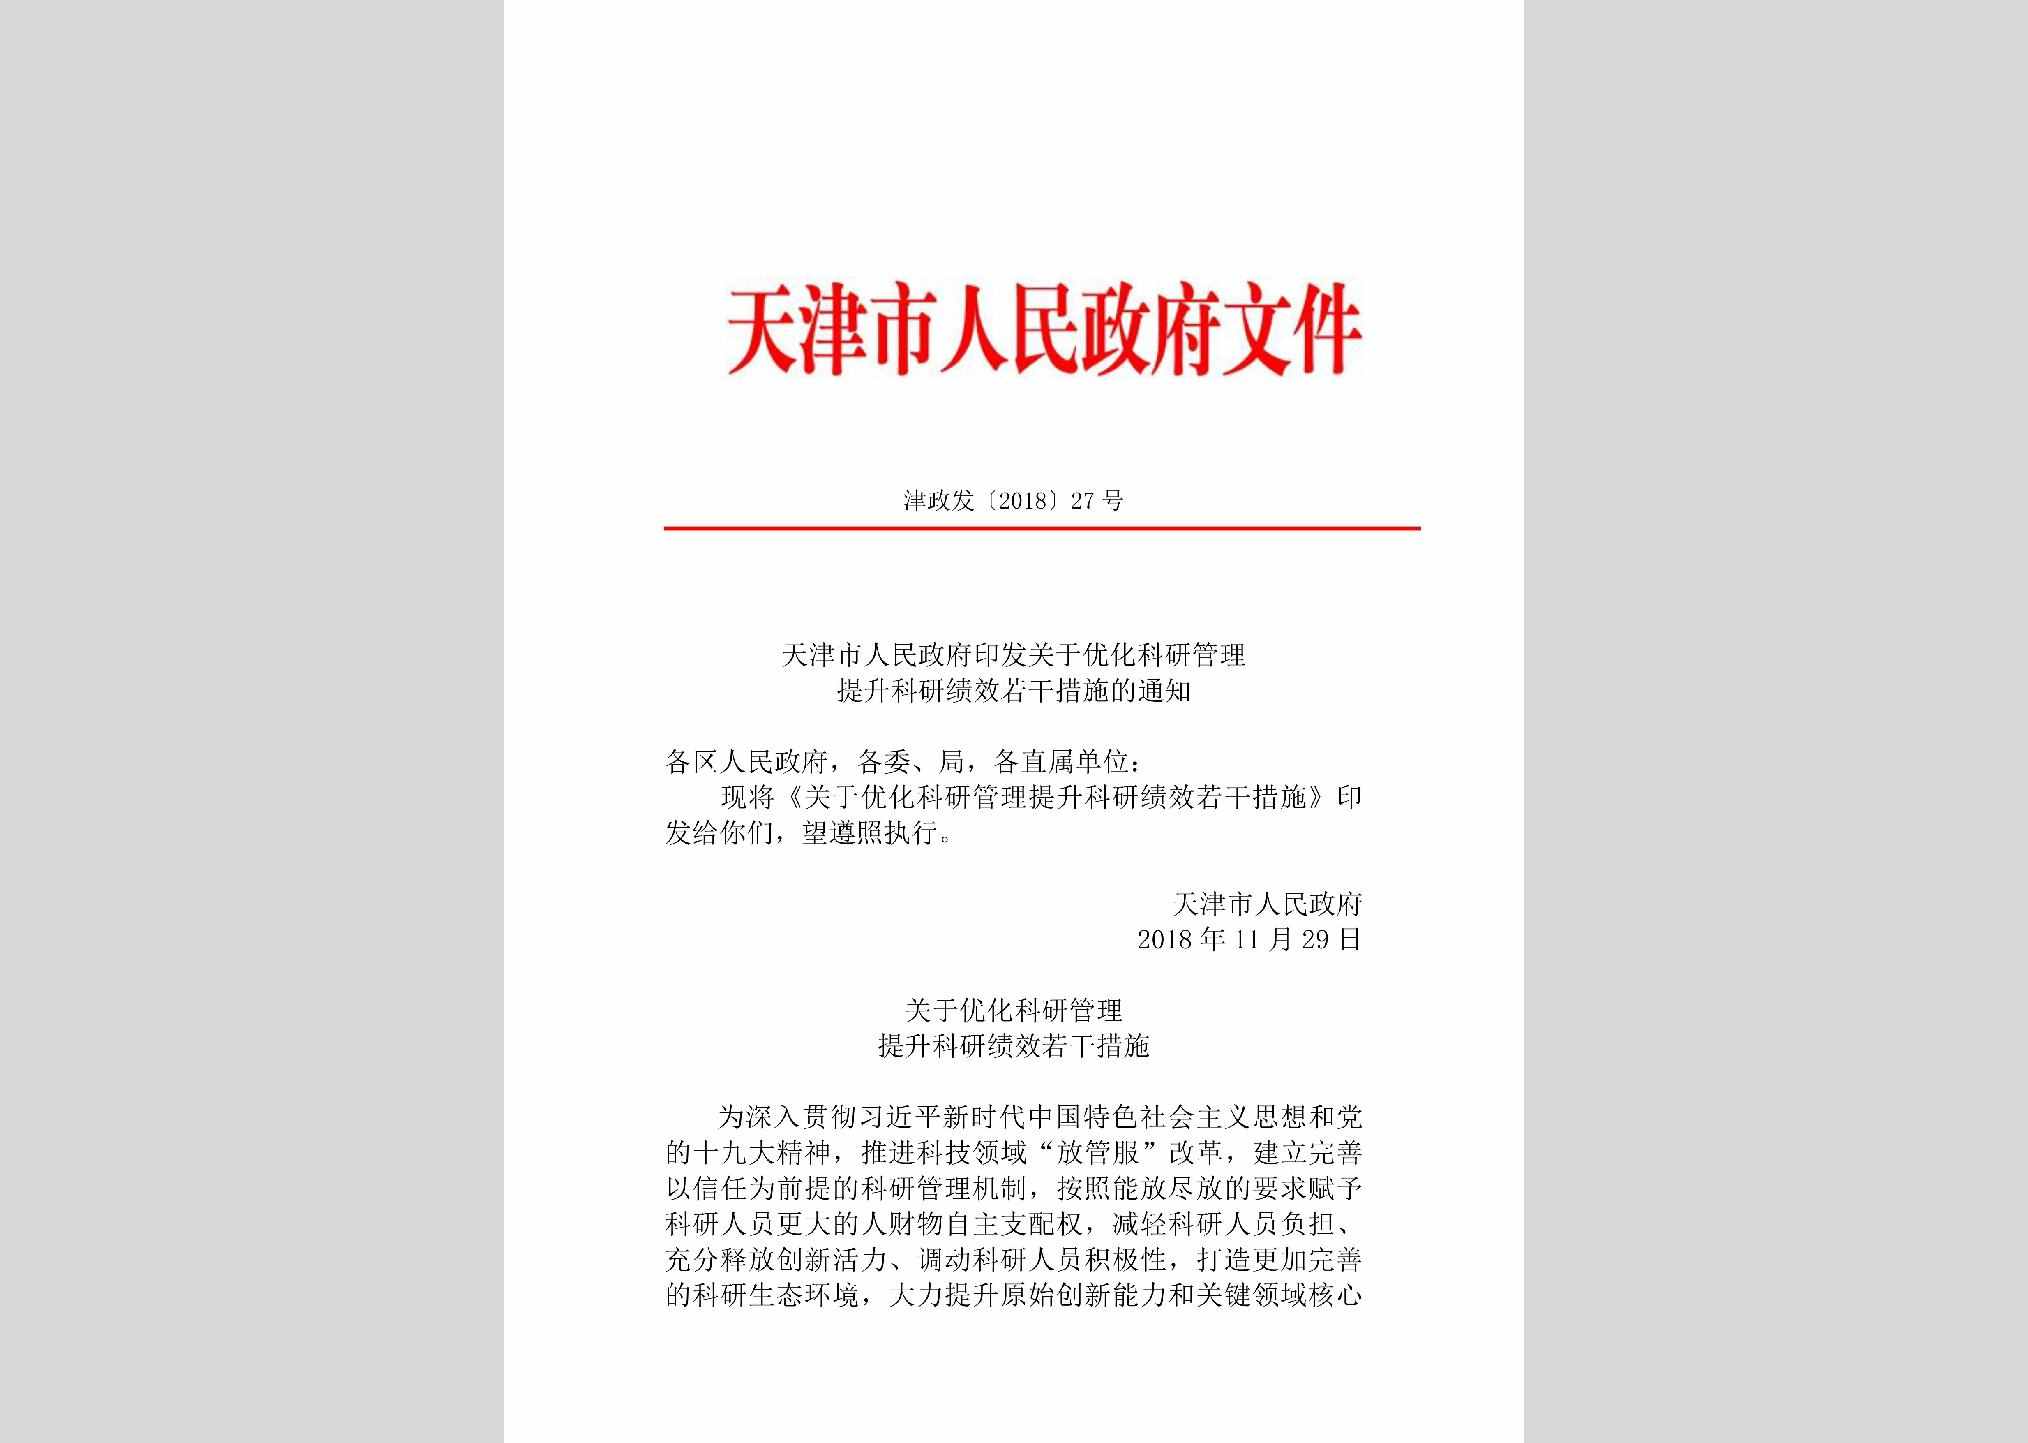 津政发[2018]27号：天津市人民政府印发关于优化科研管理提升科研绩效若干措施的通知